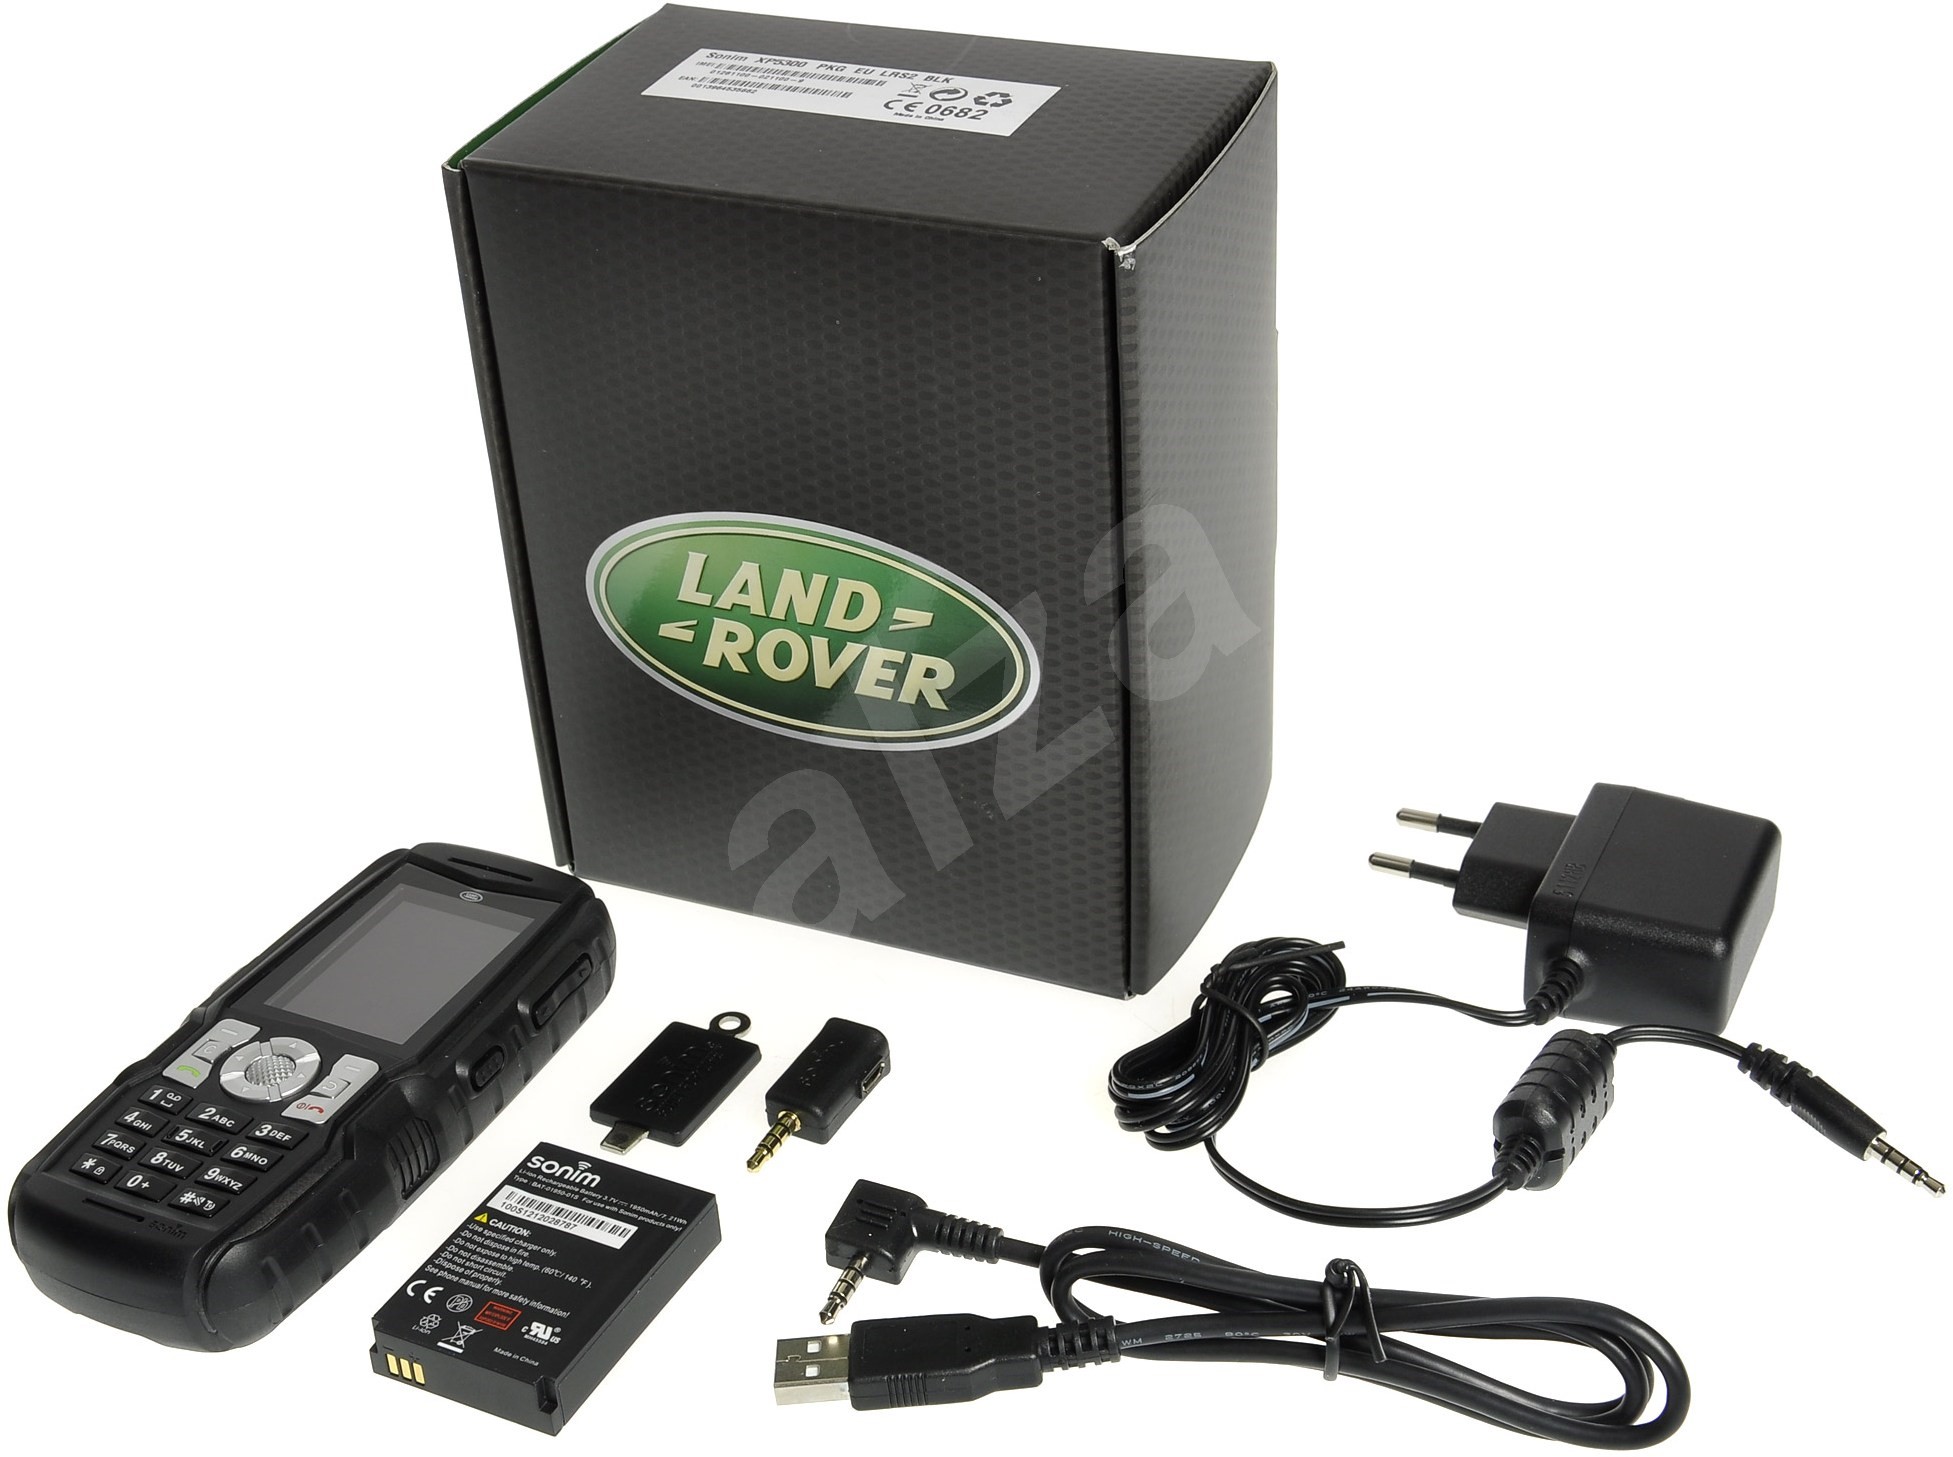 Sonim Land Rover S2 Mobilní telefon Alza.cz